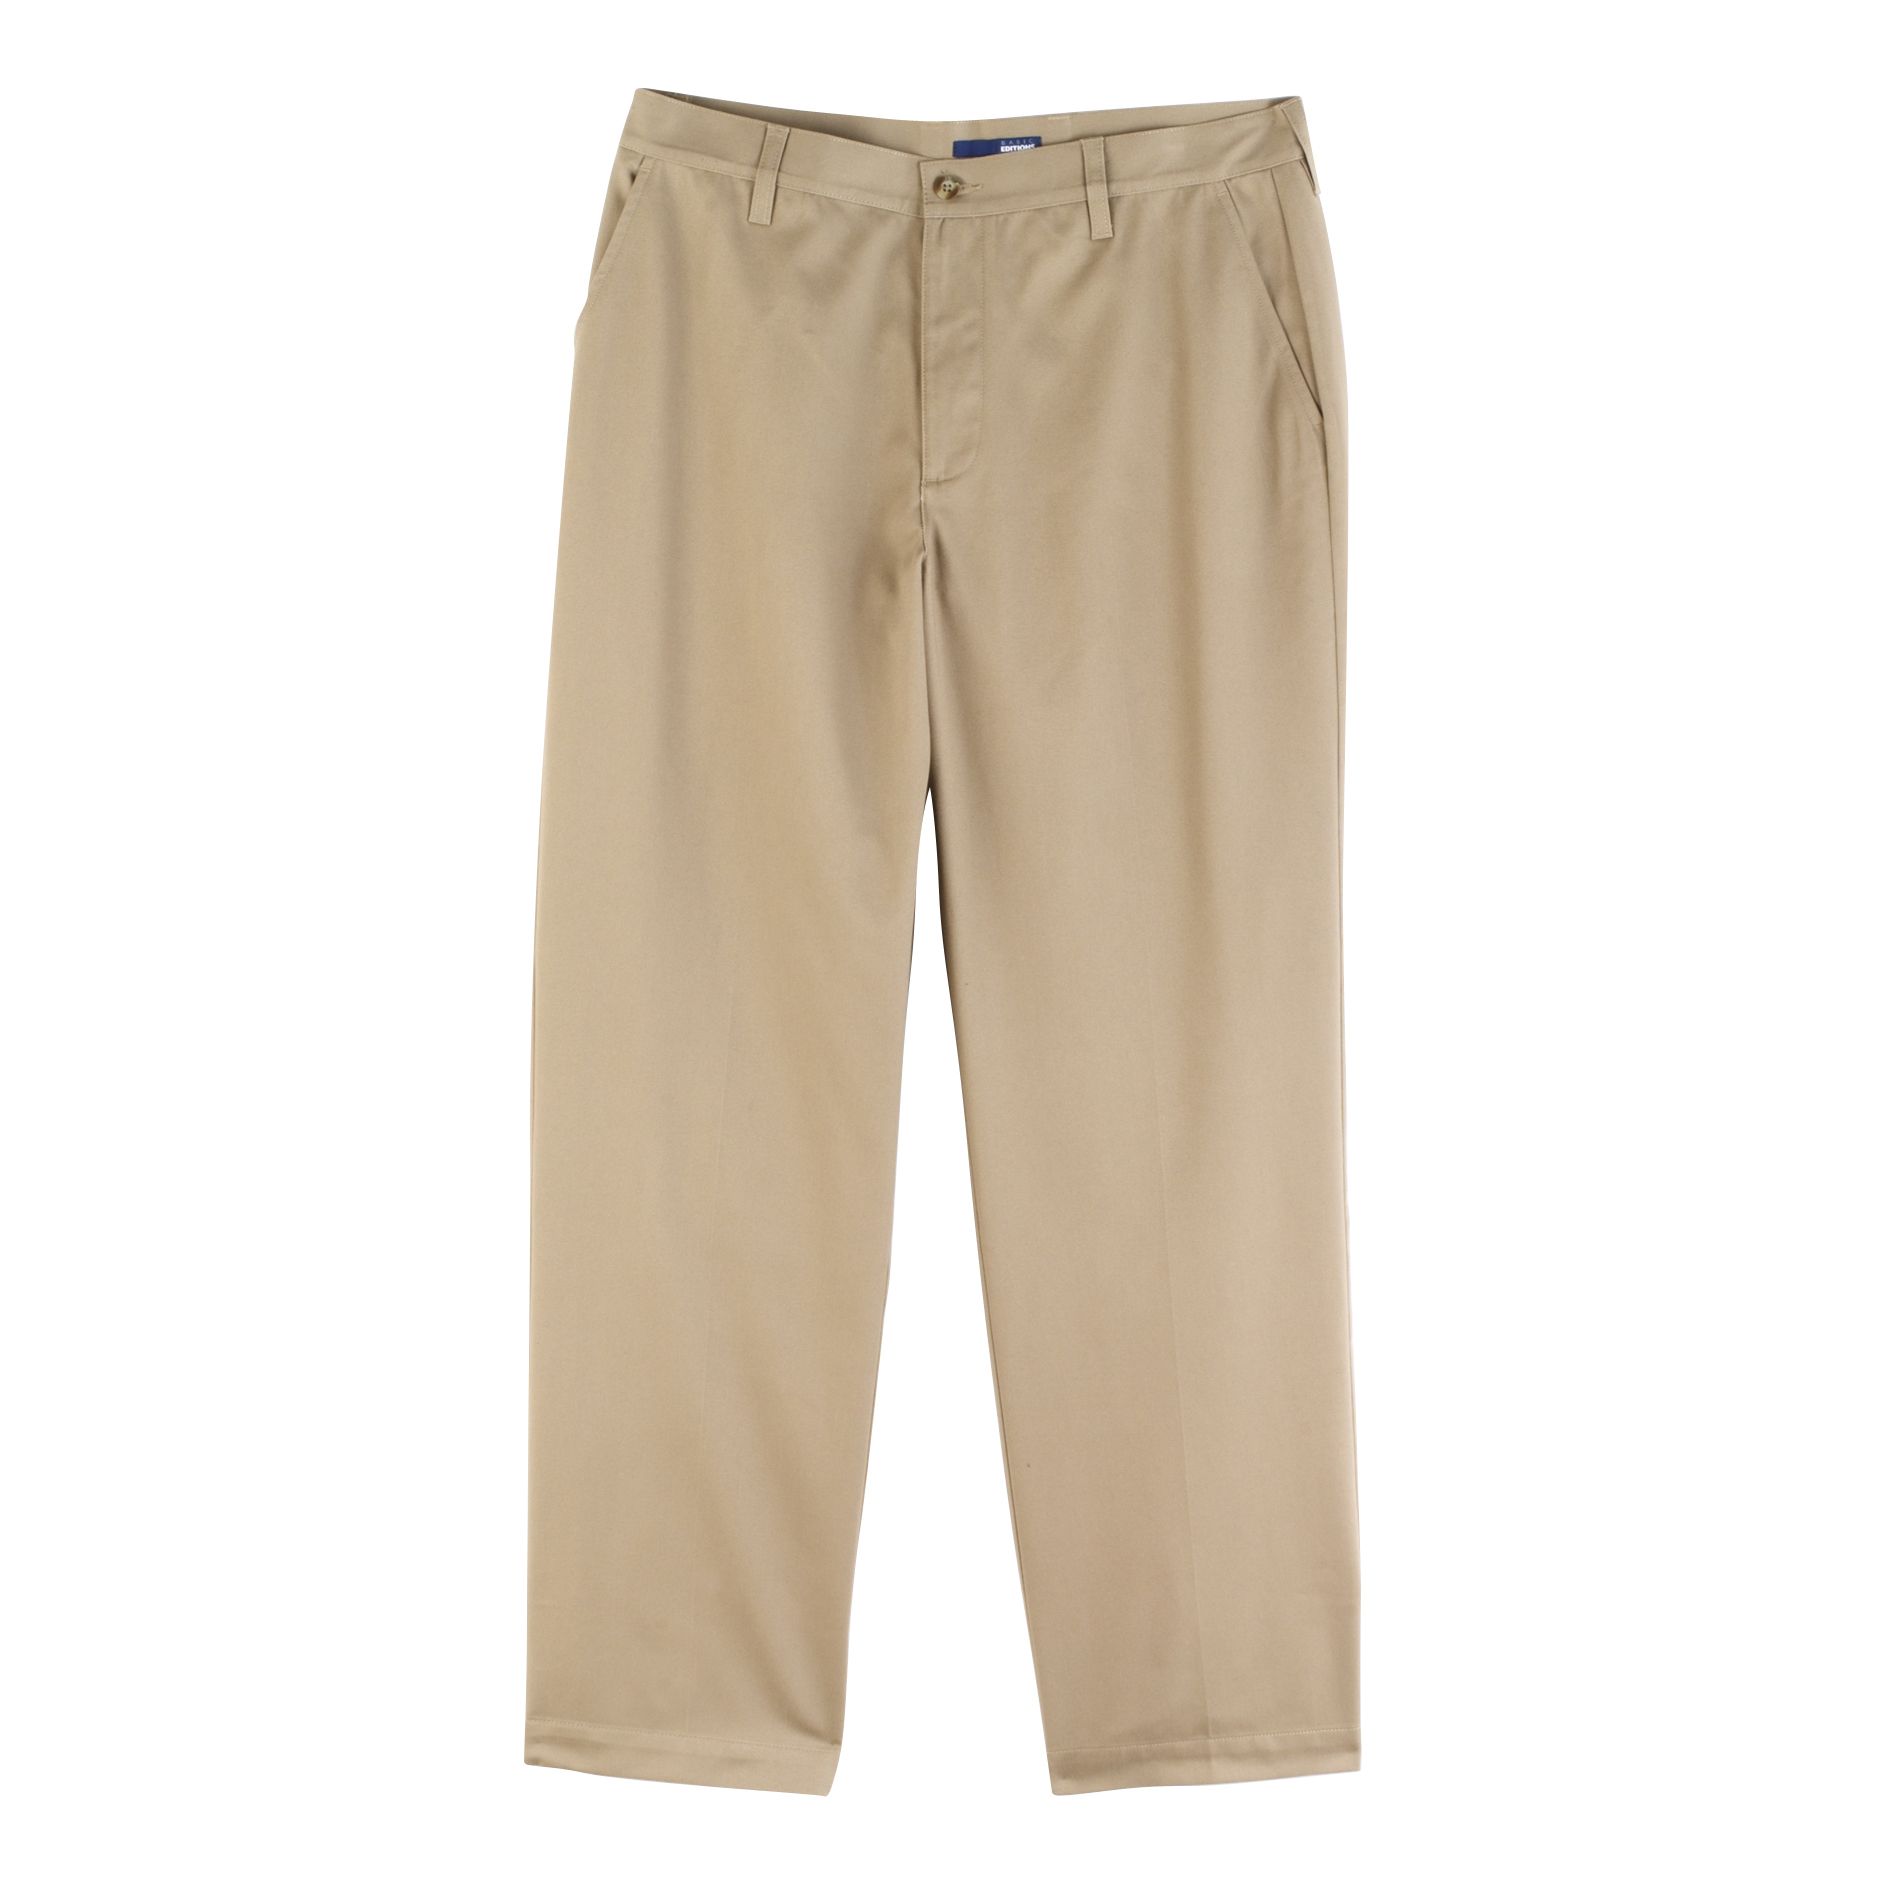 Men's Wrinkle Resistant Flat Front Classic Fit Pants